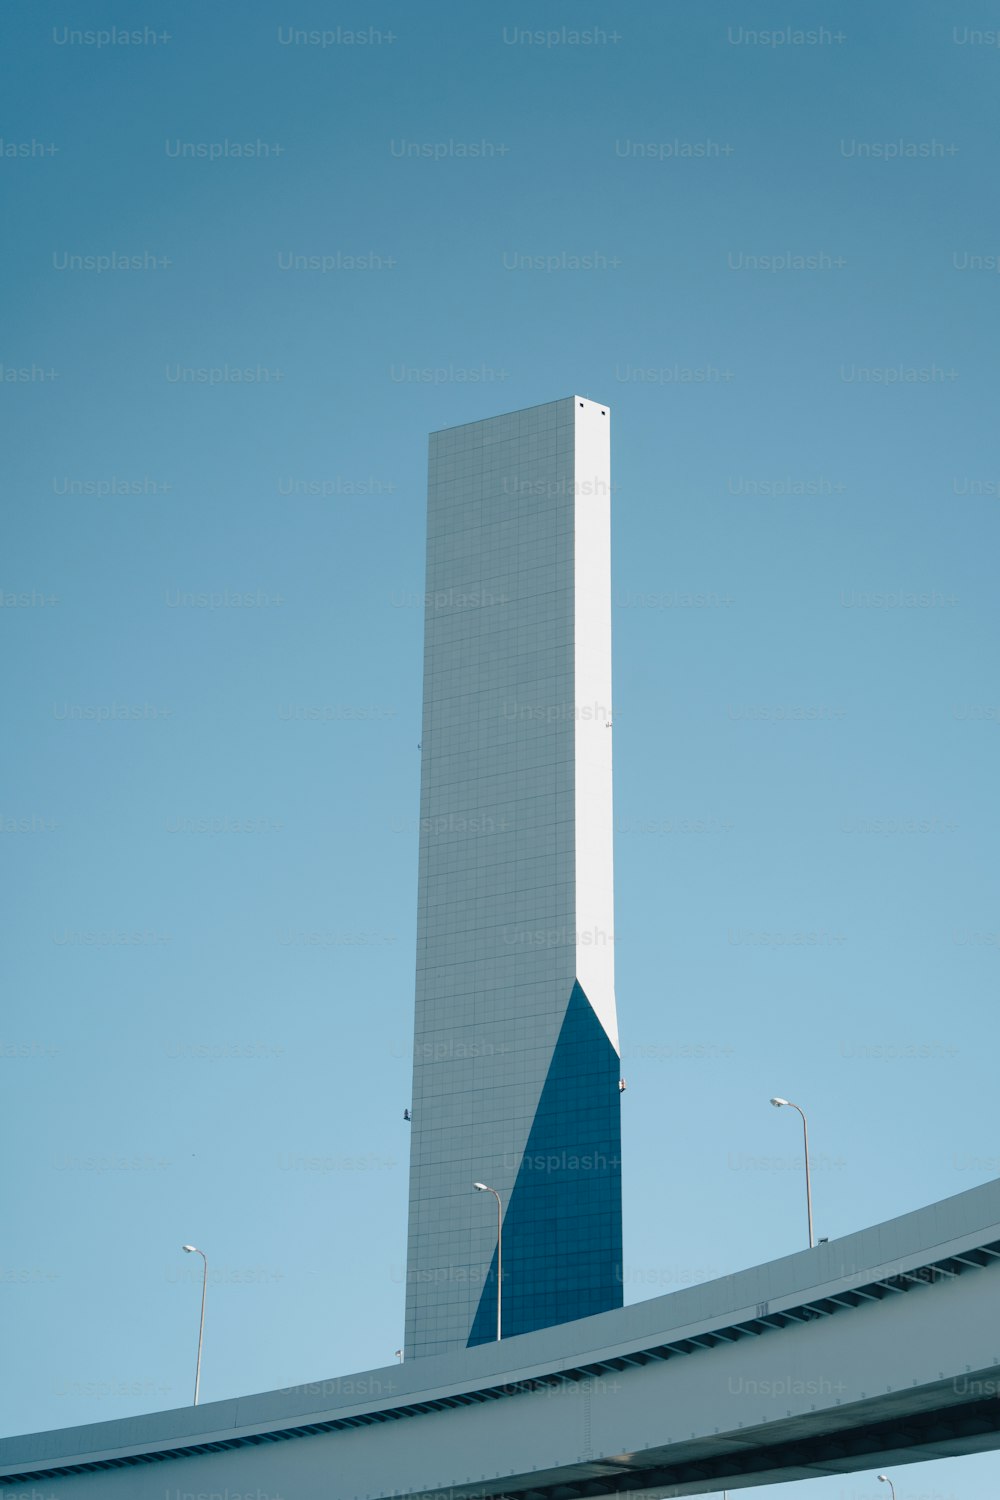 Foto Um edifício alto com um relógio na frente dele – Imagem de Dior grátis  no Unsplash